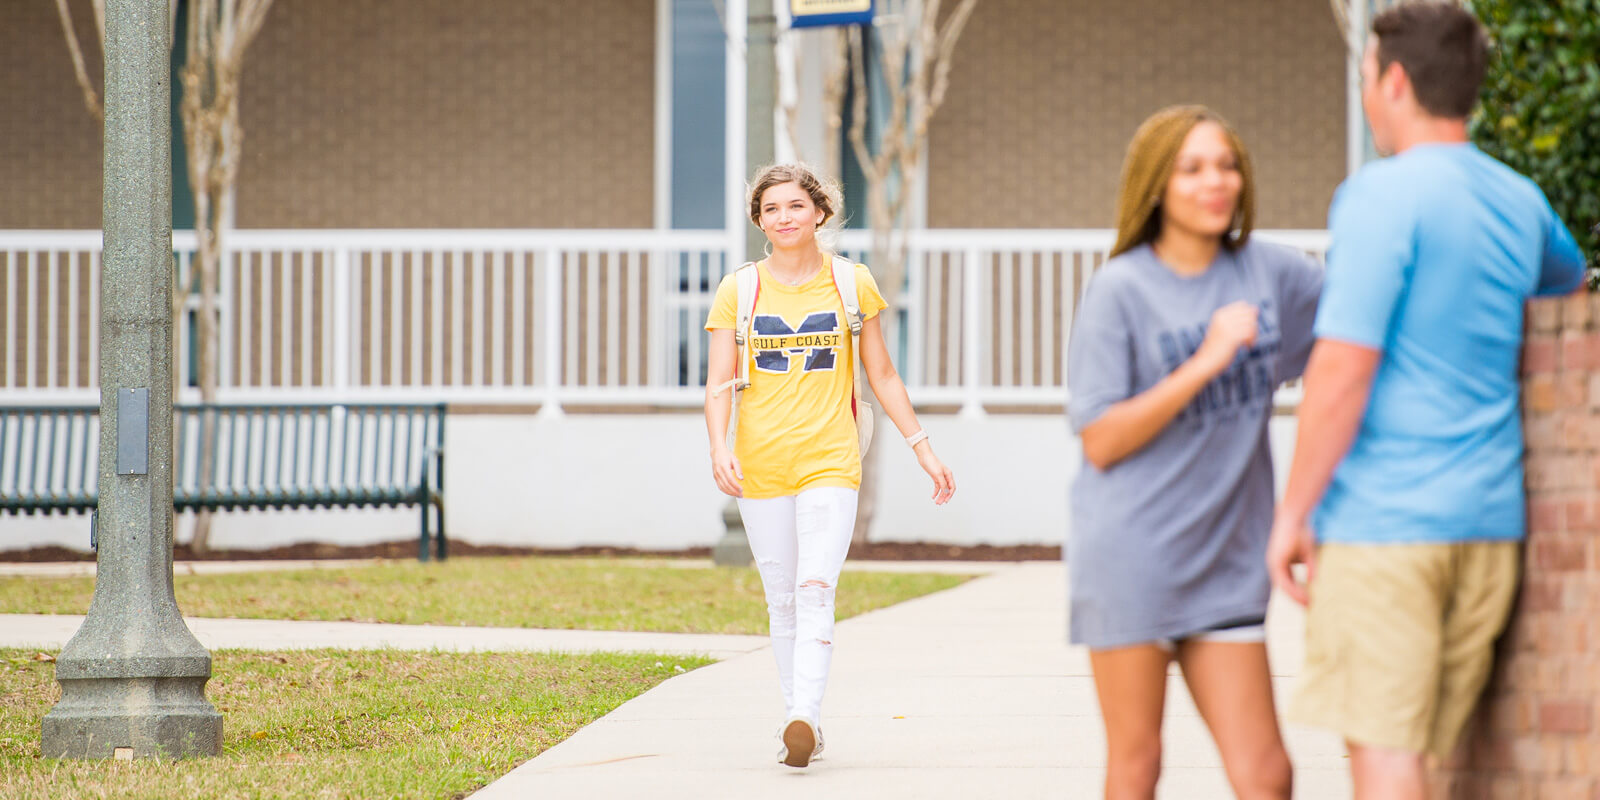 Student strolls leisurely through sunlit campus.